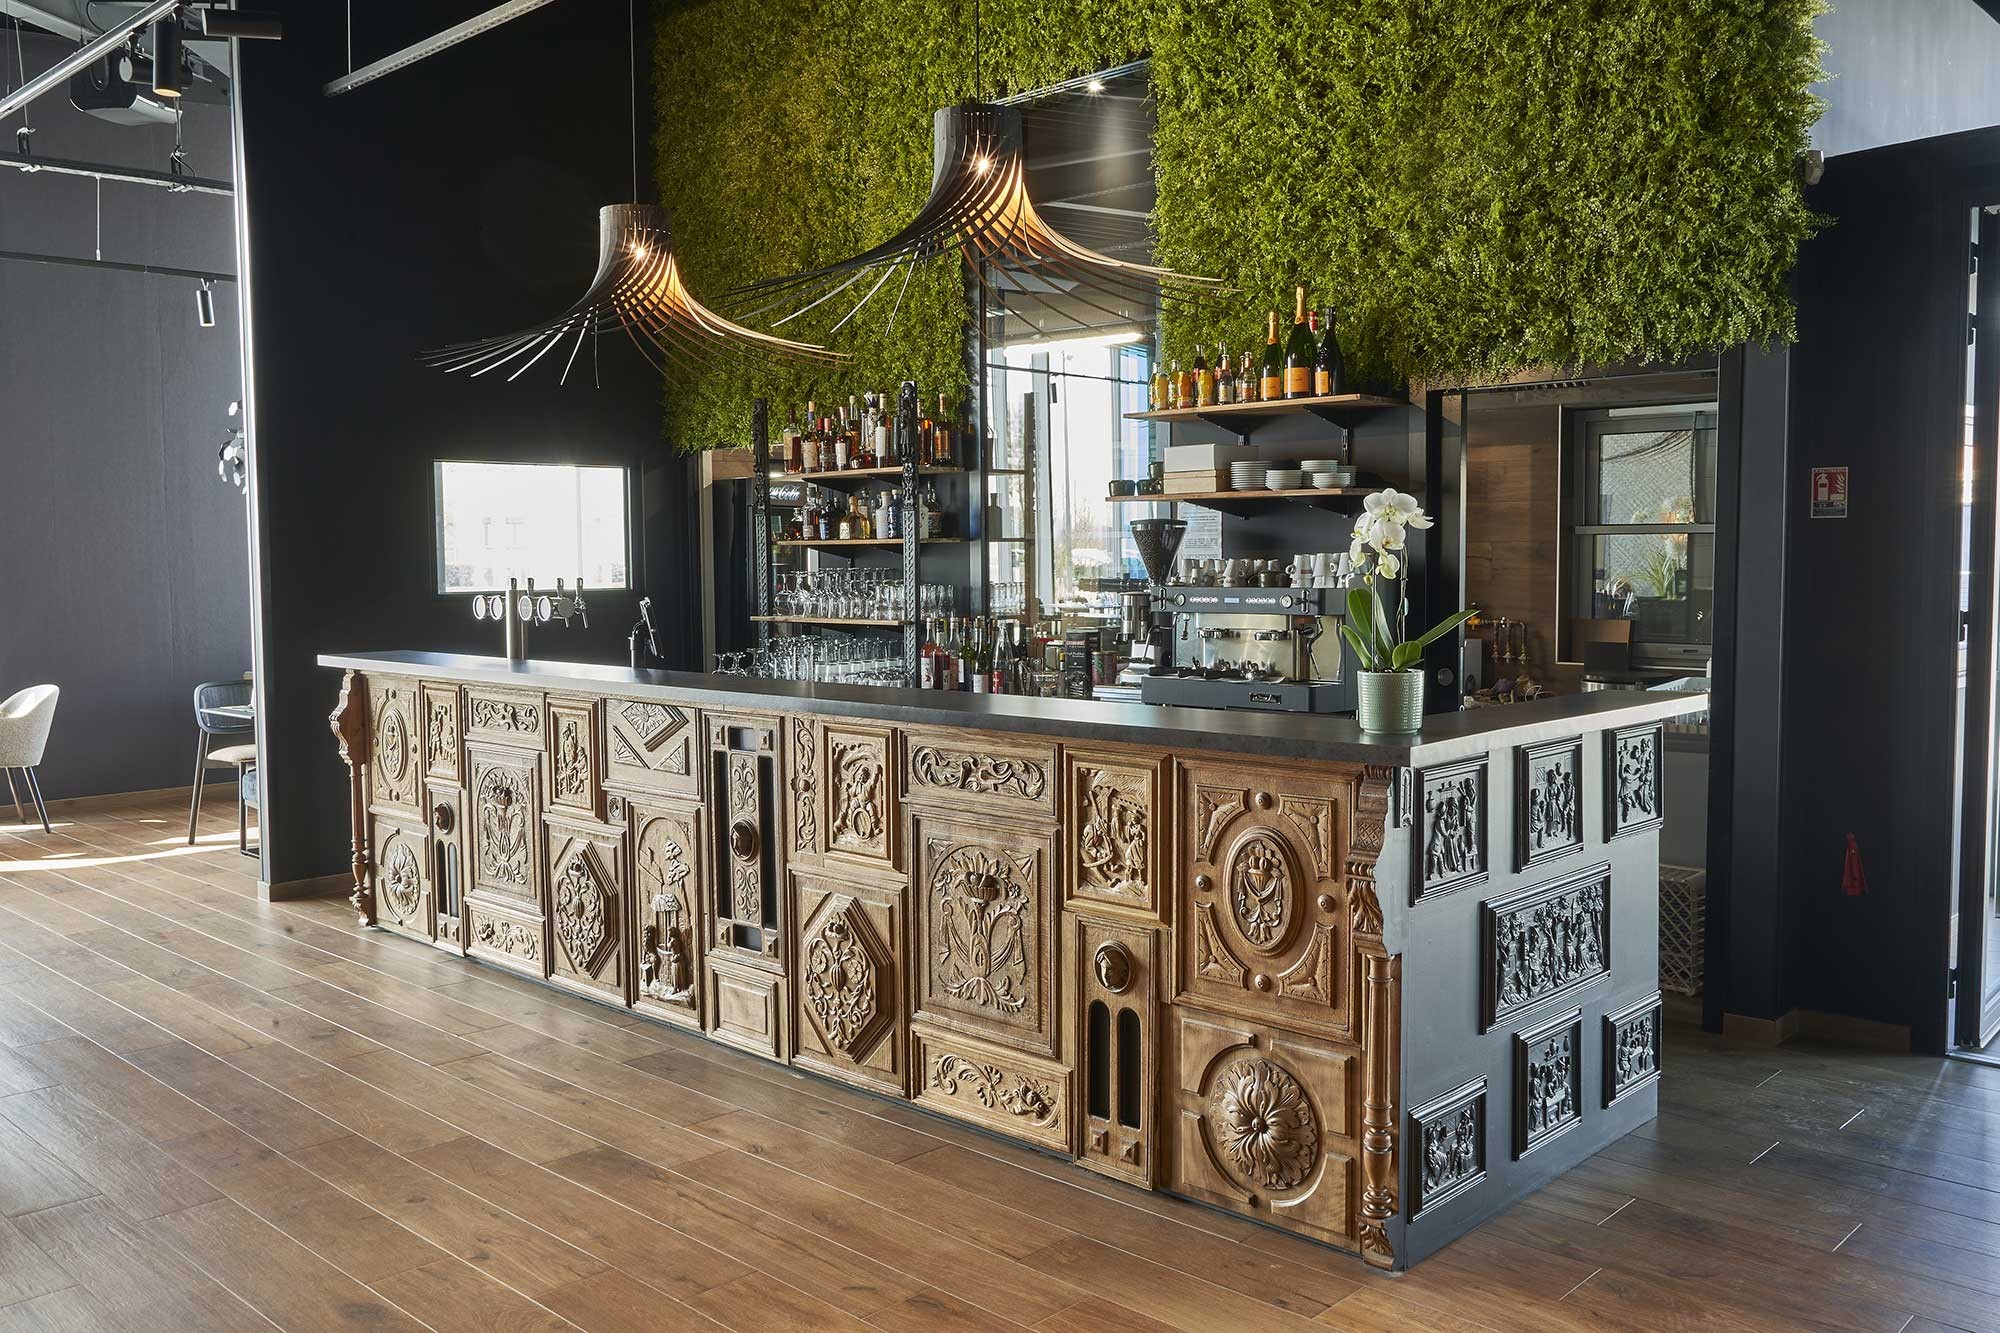  comptoir de bar de brasserie avec décoration en bois 